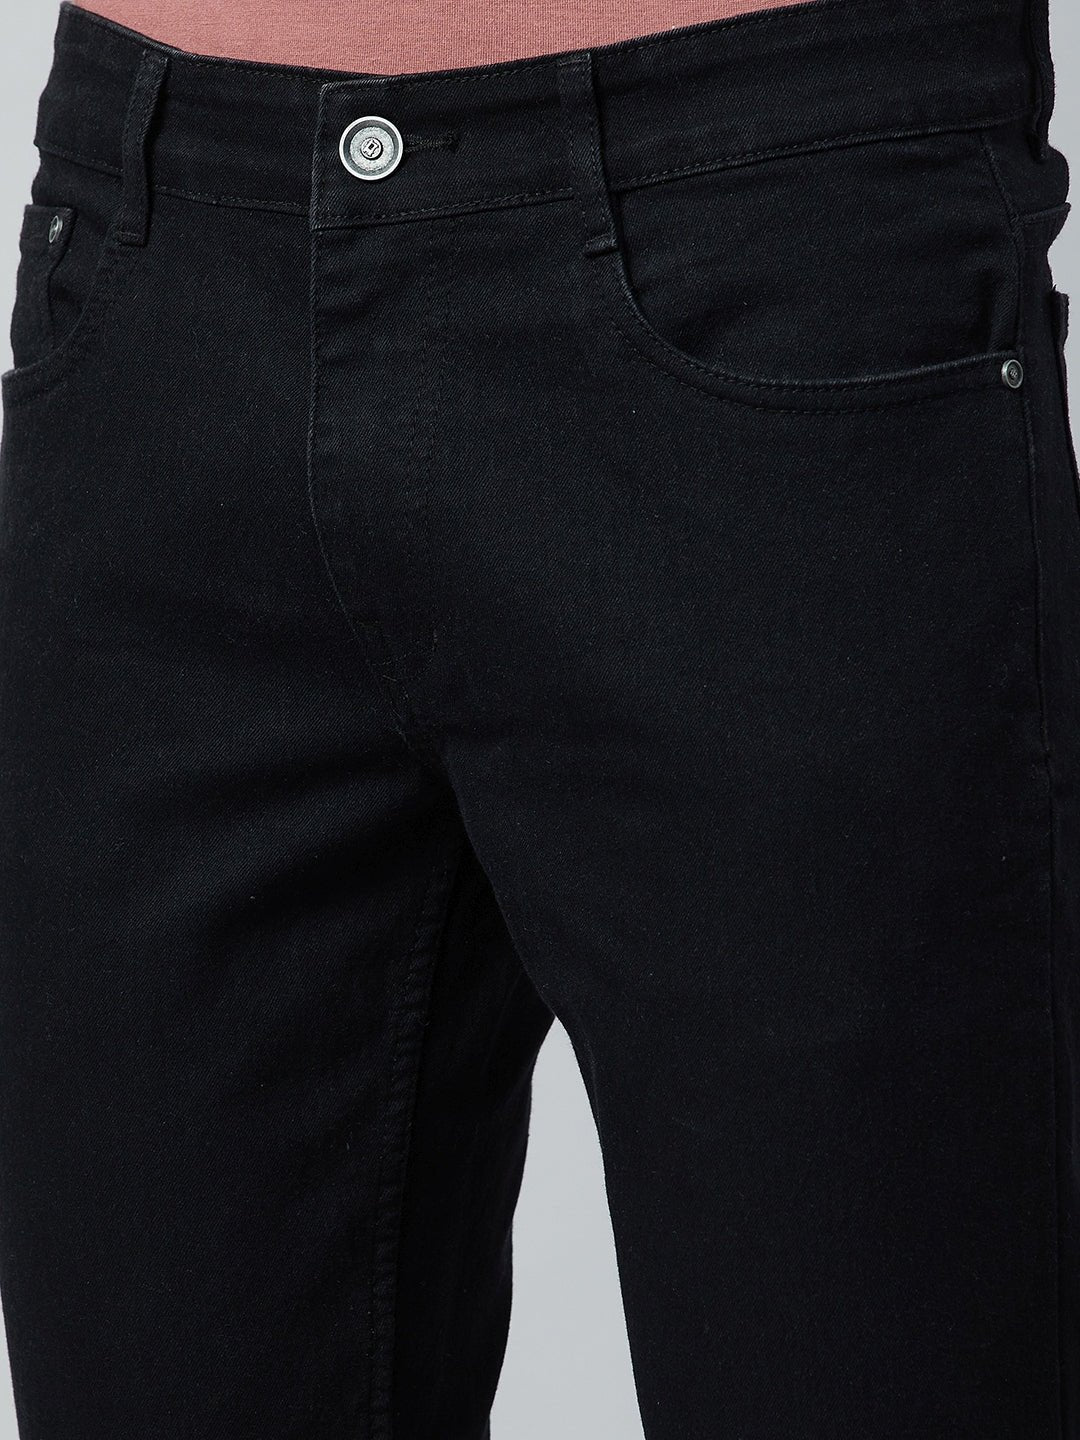 Black Slim Fit Solid Jean - clubyork